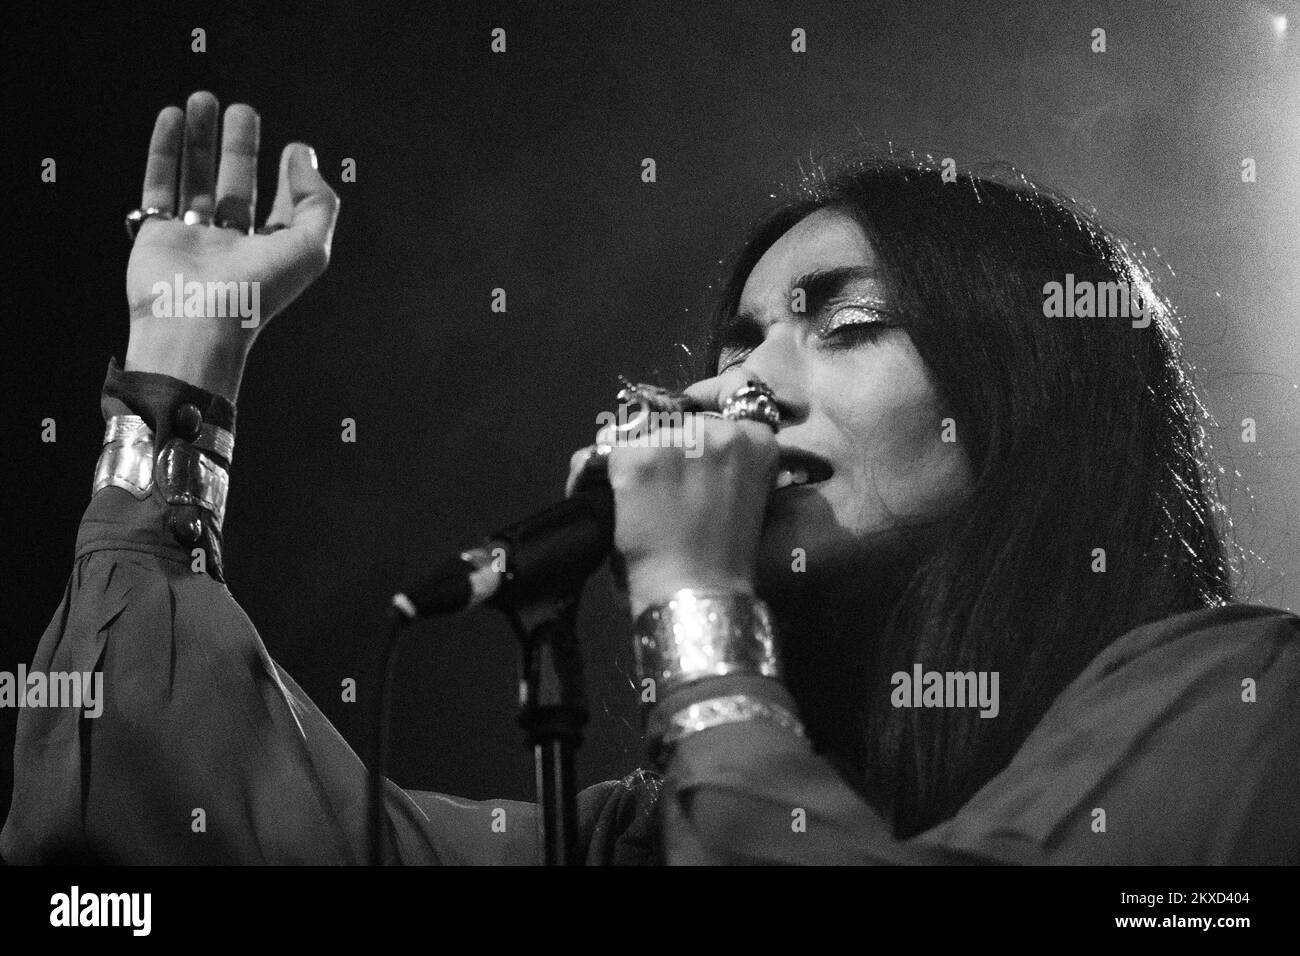 27.09.19., Croatia, Zagreb - Hindi Zahra Concert at the Culture Factory Photo: Zoe Sarlija/PIXSELL  Stock Photo